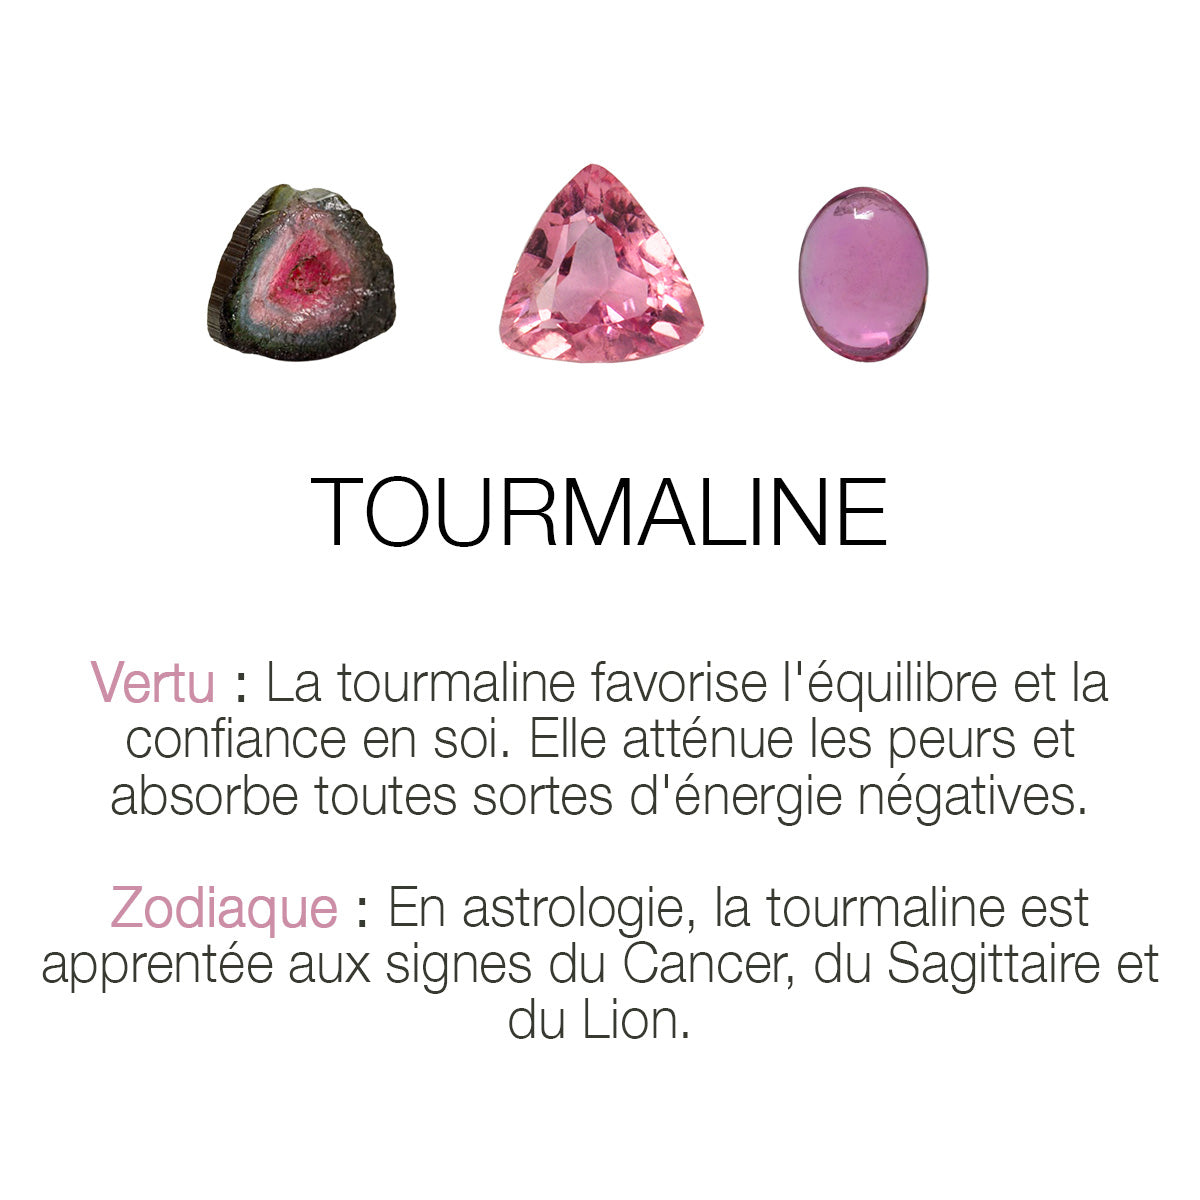 Bague Little" - Tourmaline